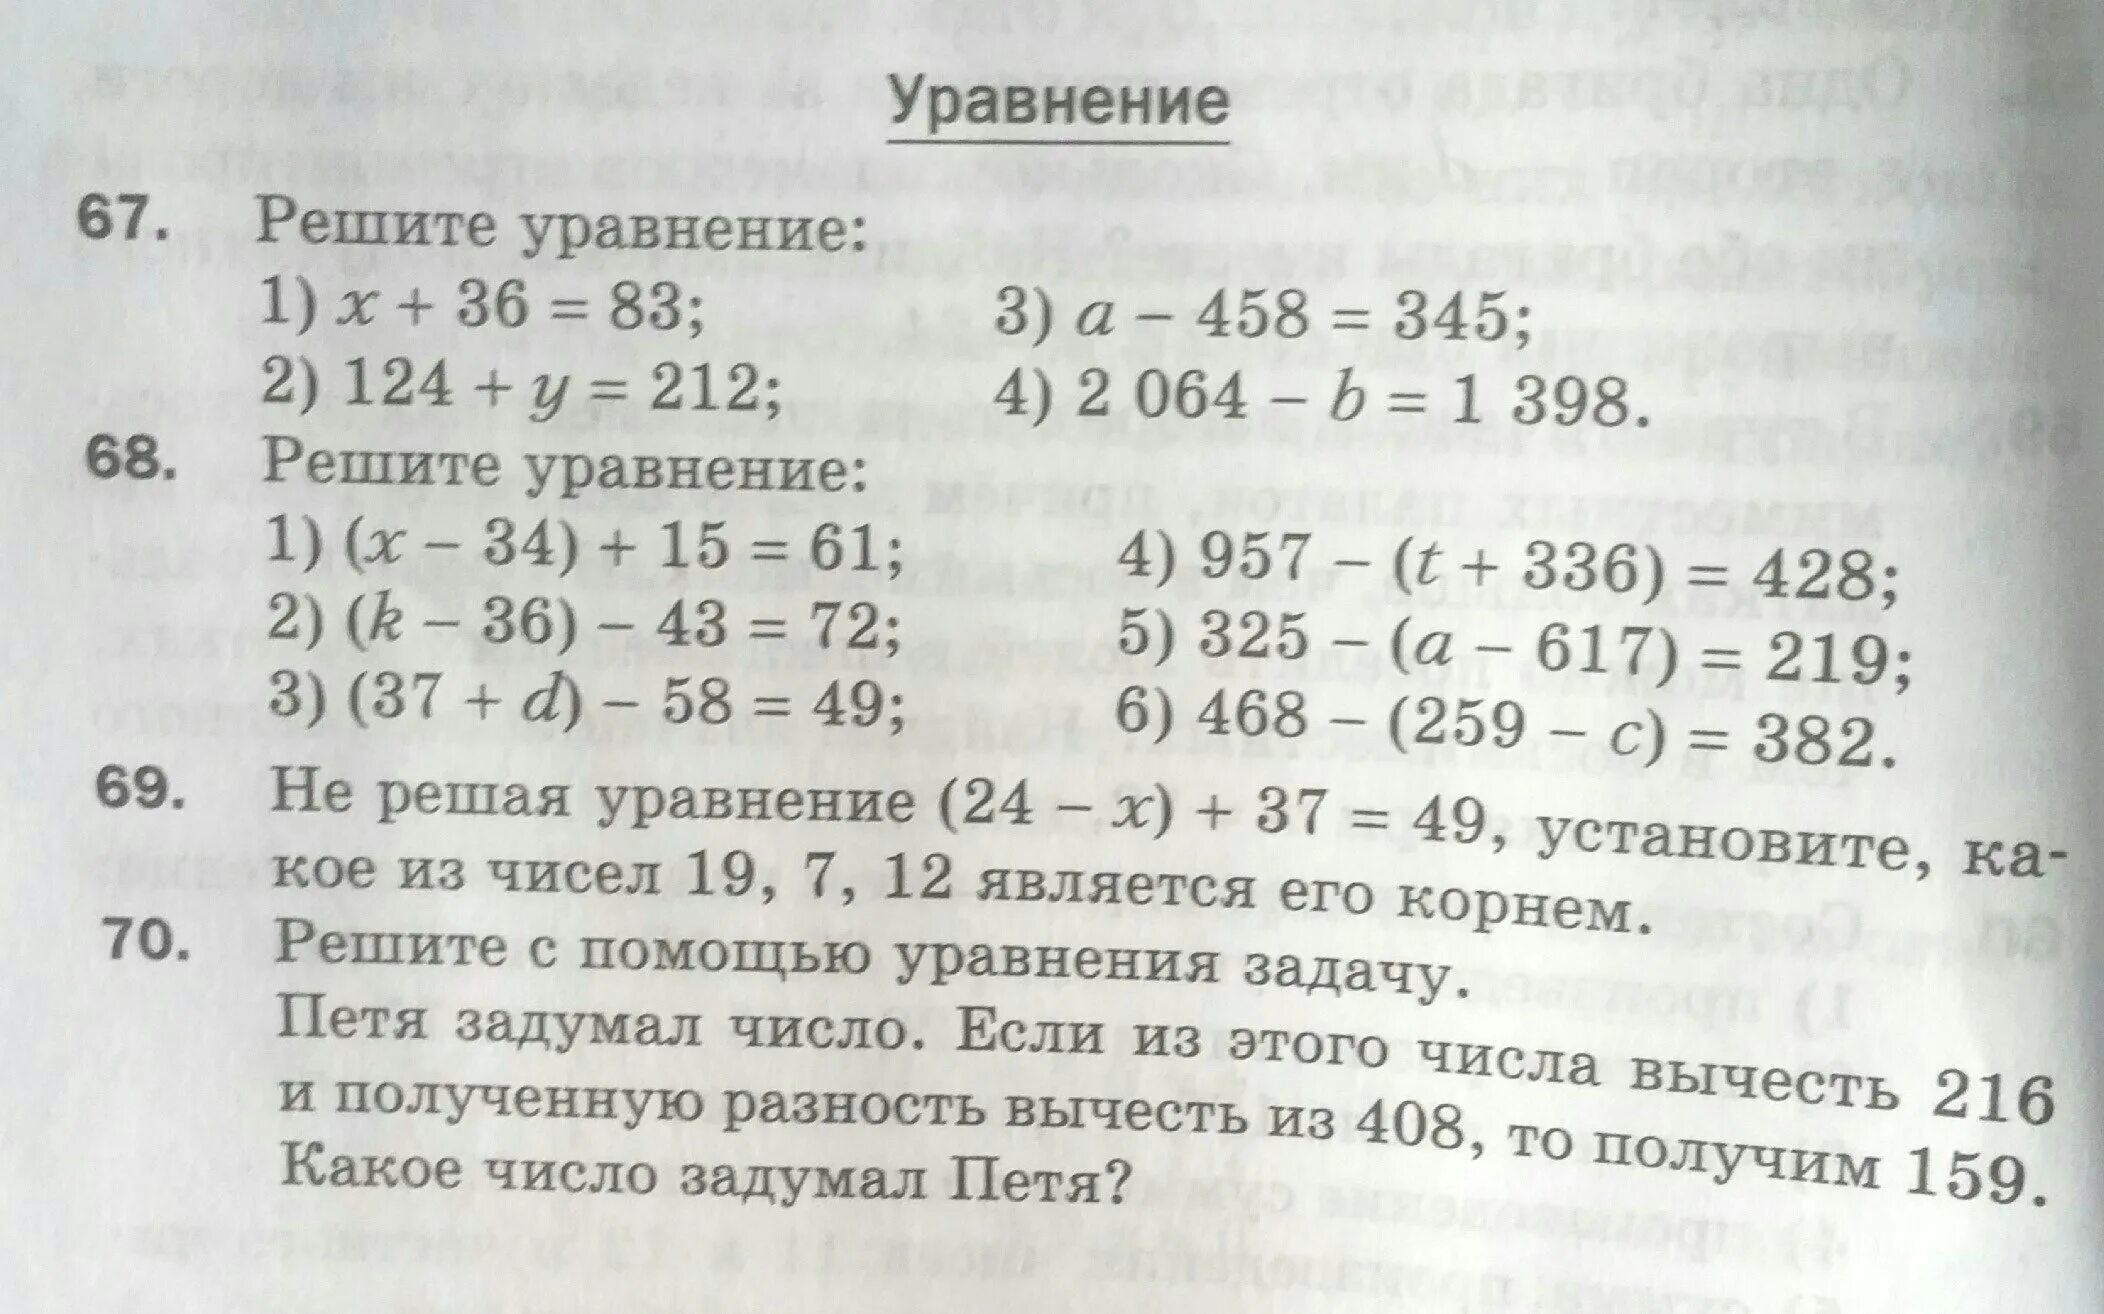 Задумали число из 159 вычли. 468-(259-C)=382. Уравнение с помощью школьной формы. 468-(259-Х)=382. Решение уравнения 124-24*(480:x-56)=28.